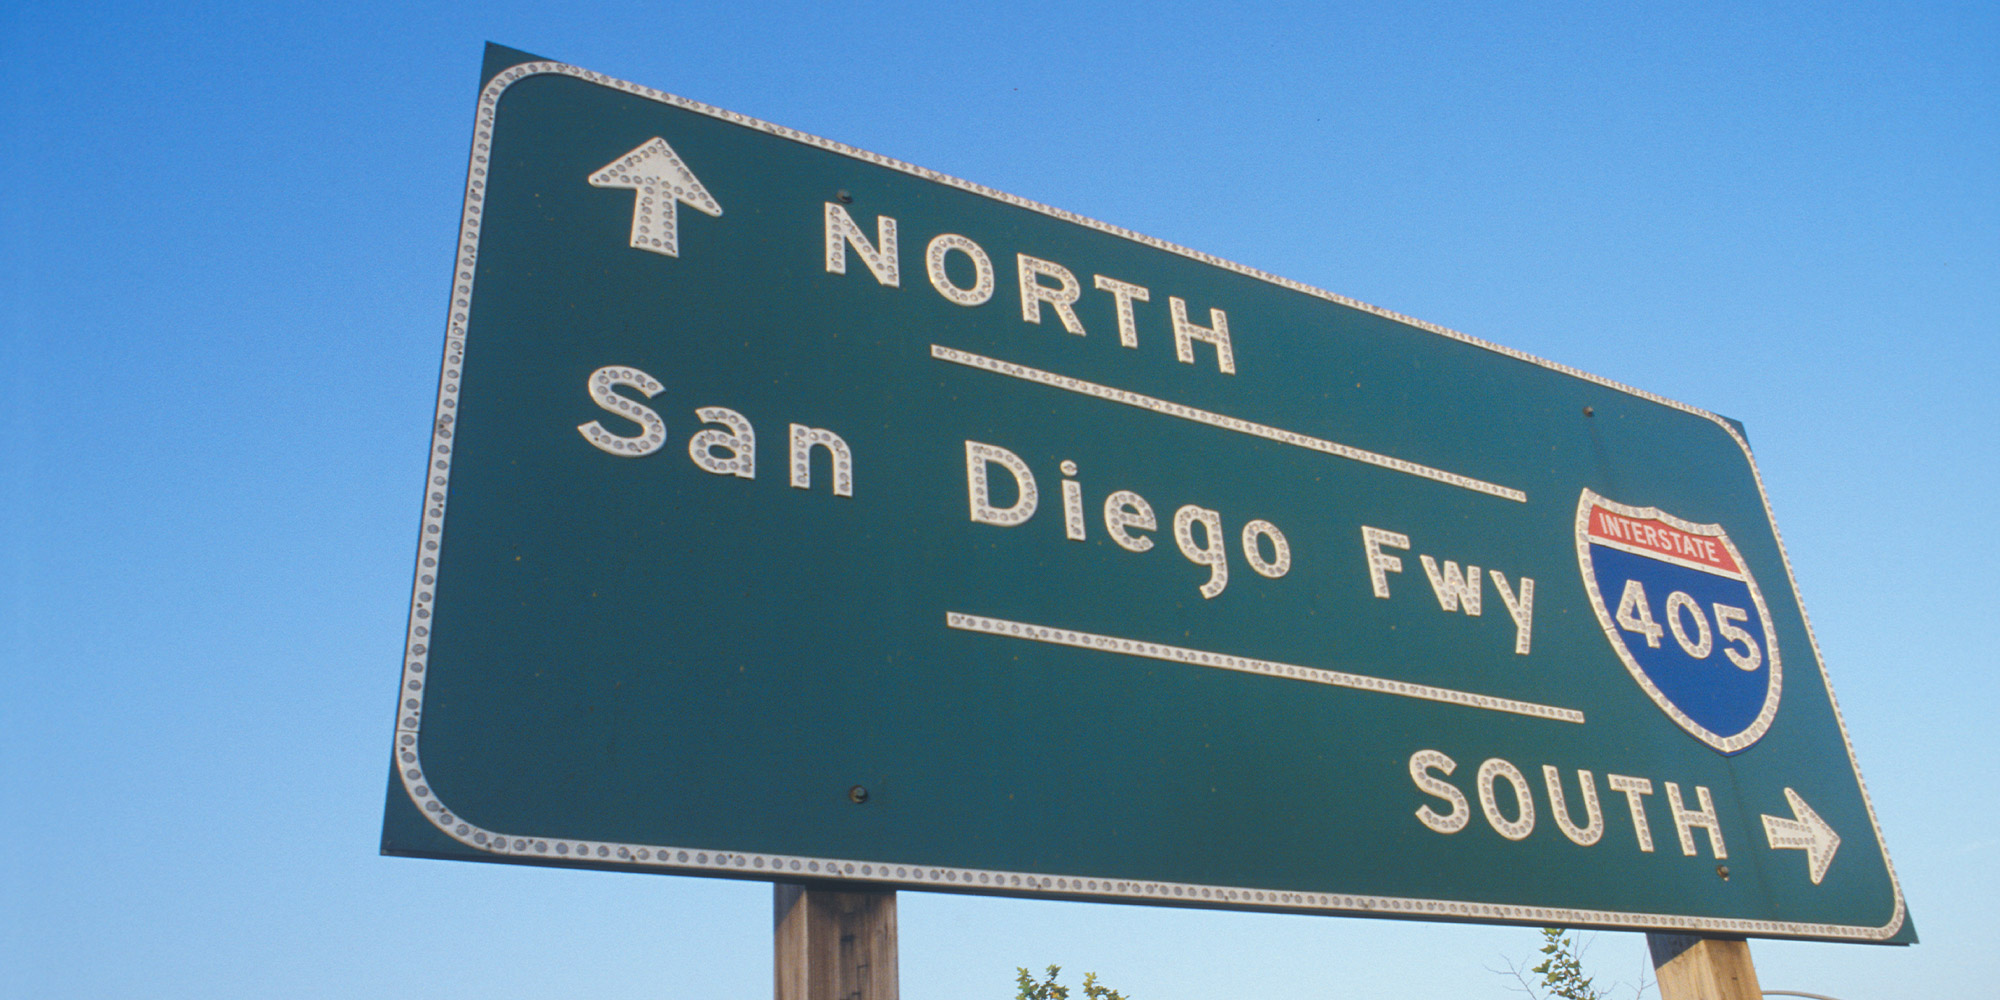 405 San Diego freeway